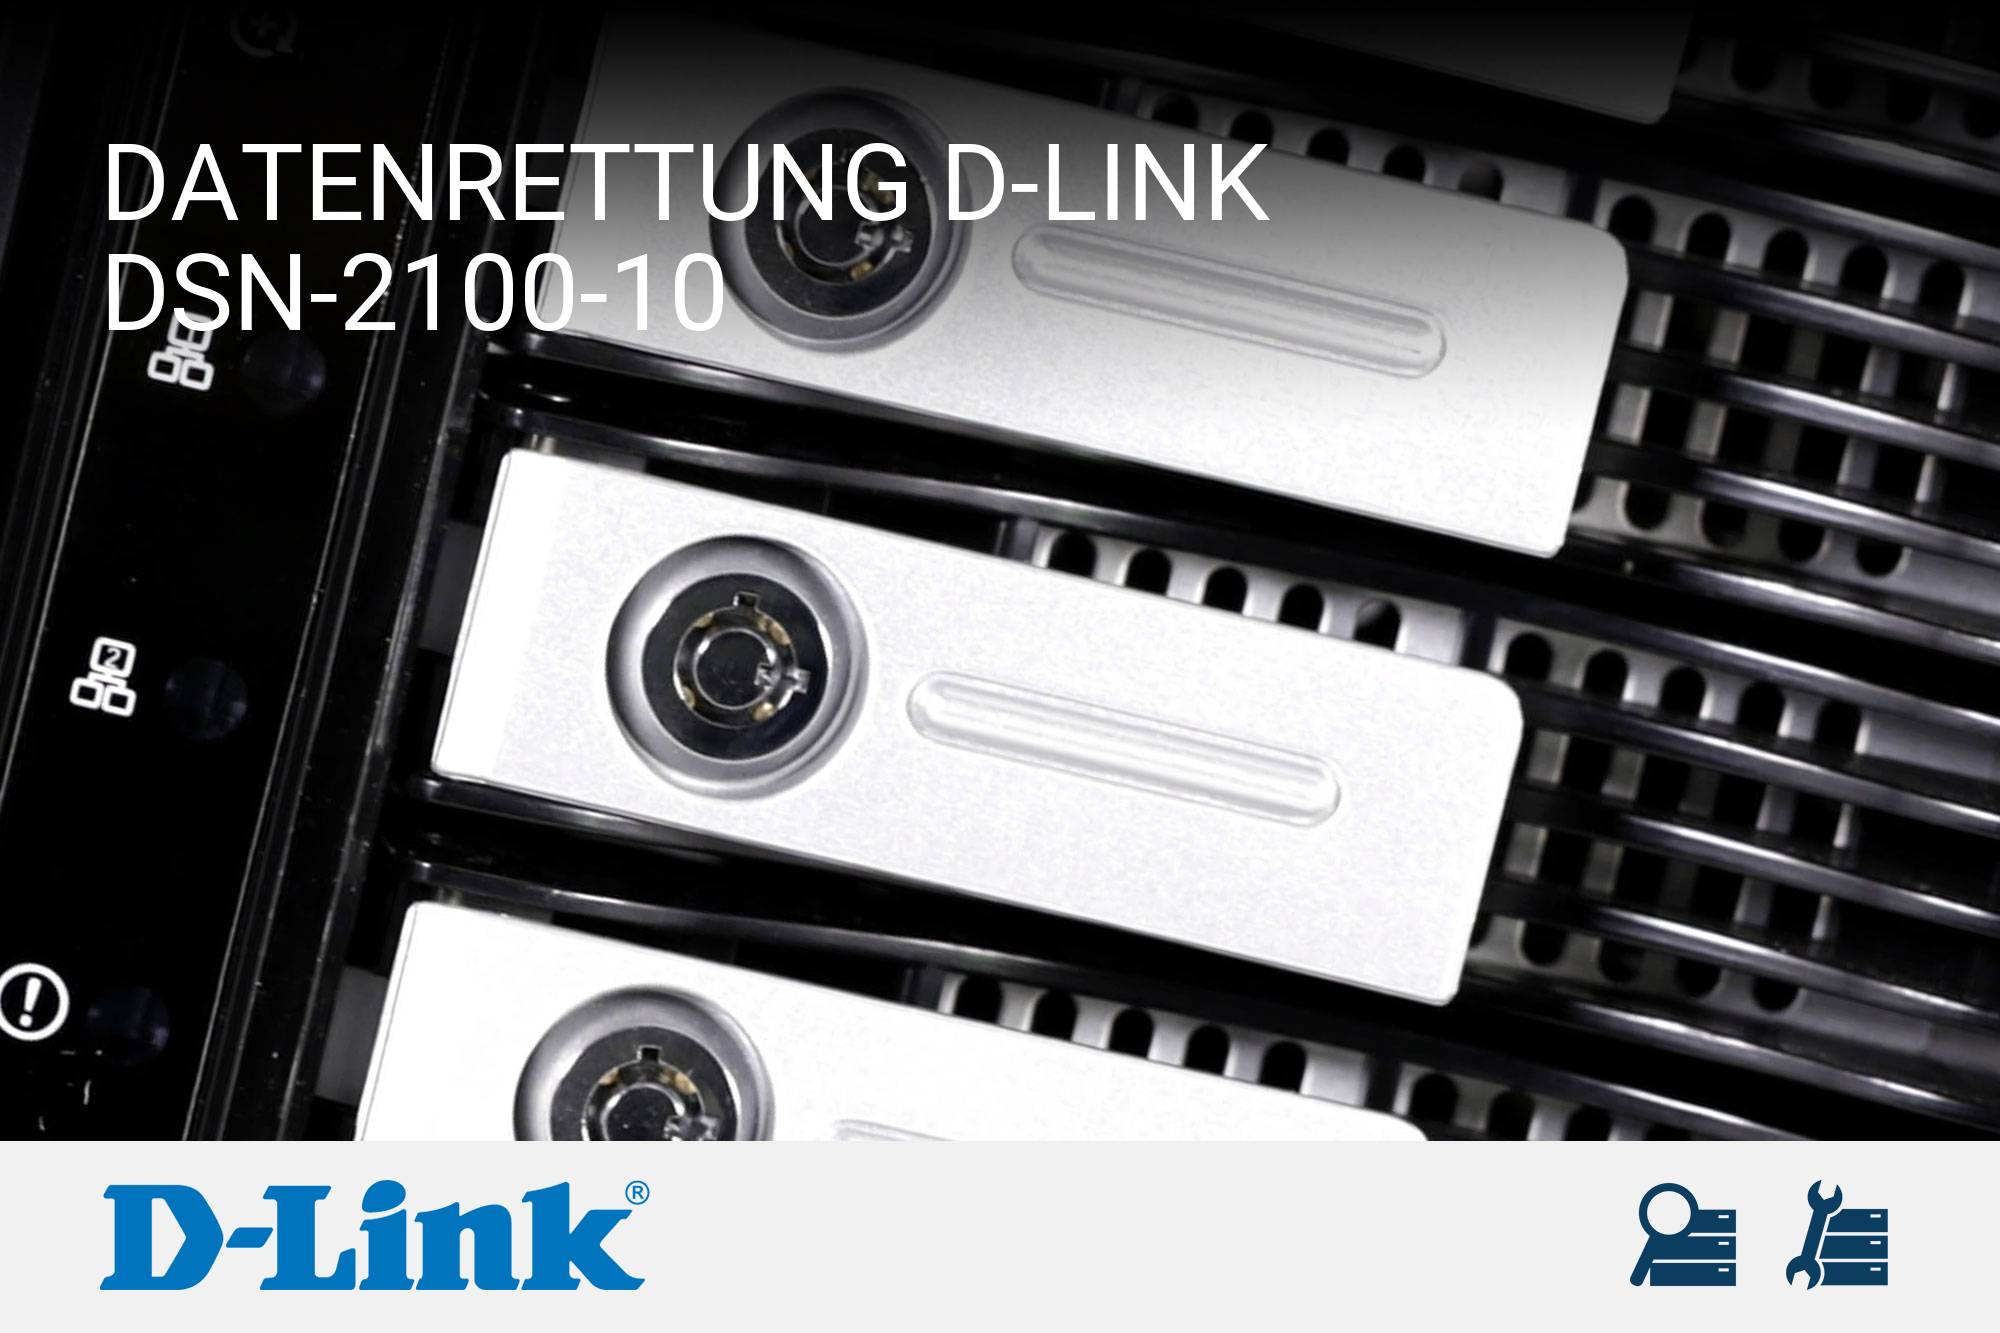 D-Link DSN-2100-10